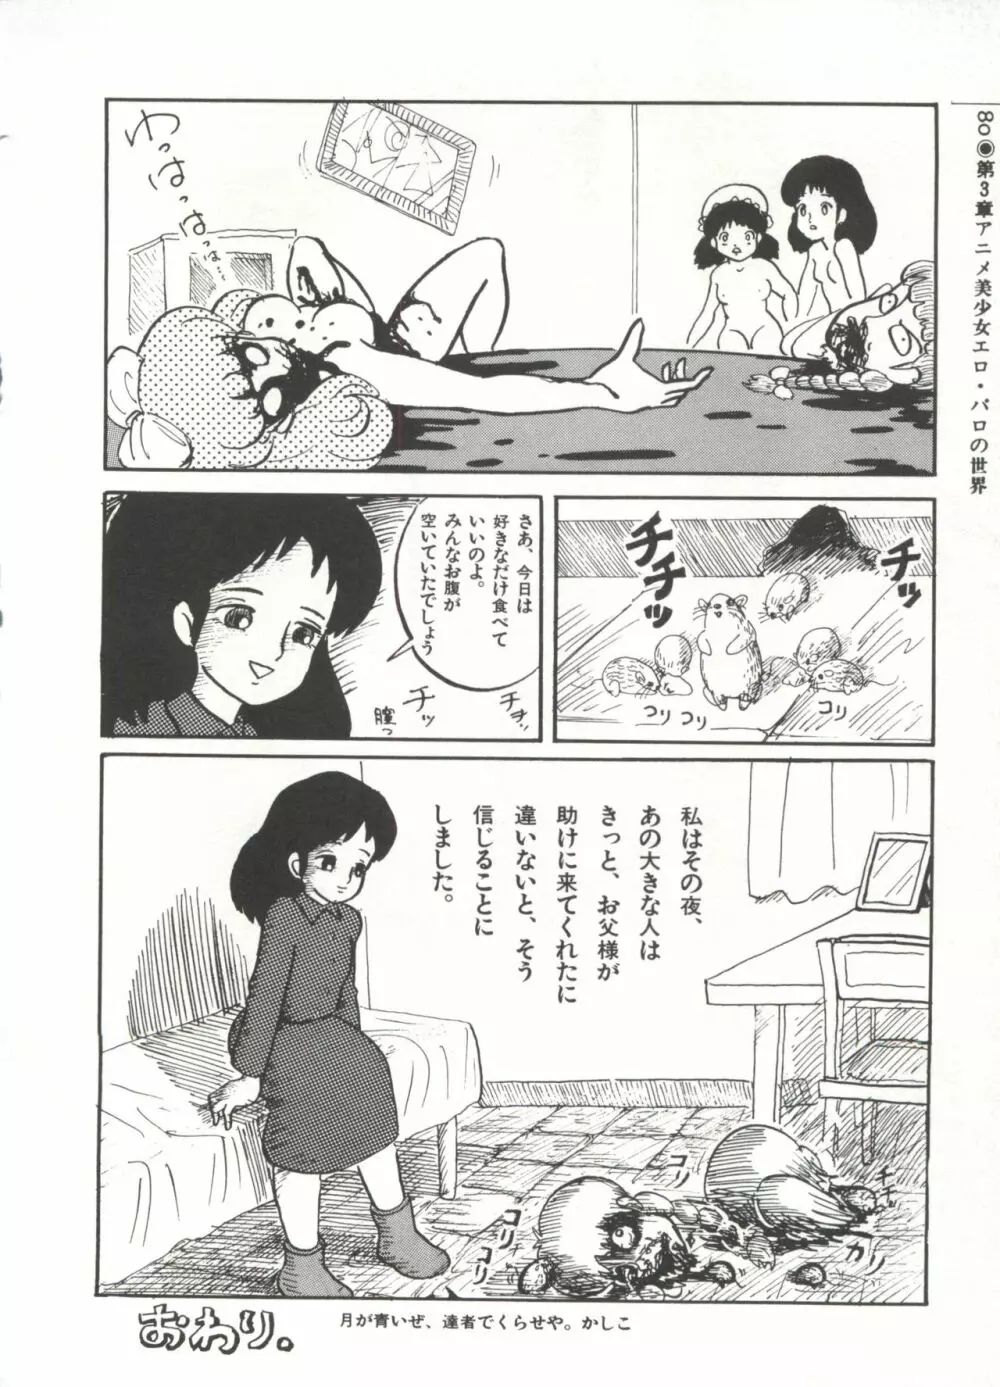 [Anthology] 美少女症候群(2) Lolita syndrome (よろず) 83ページ